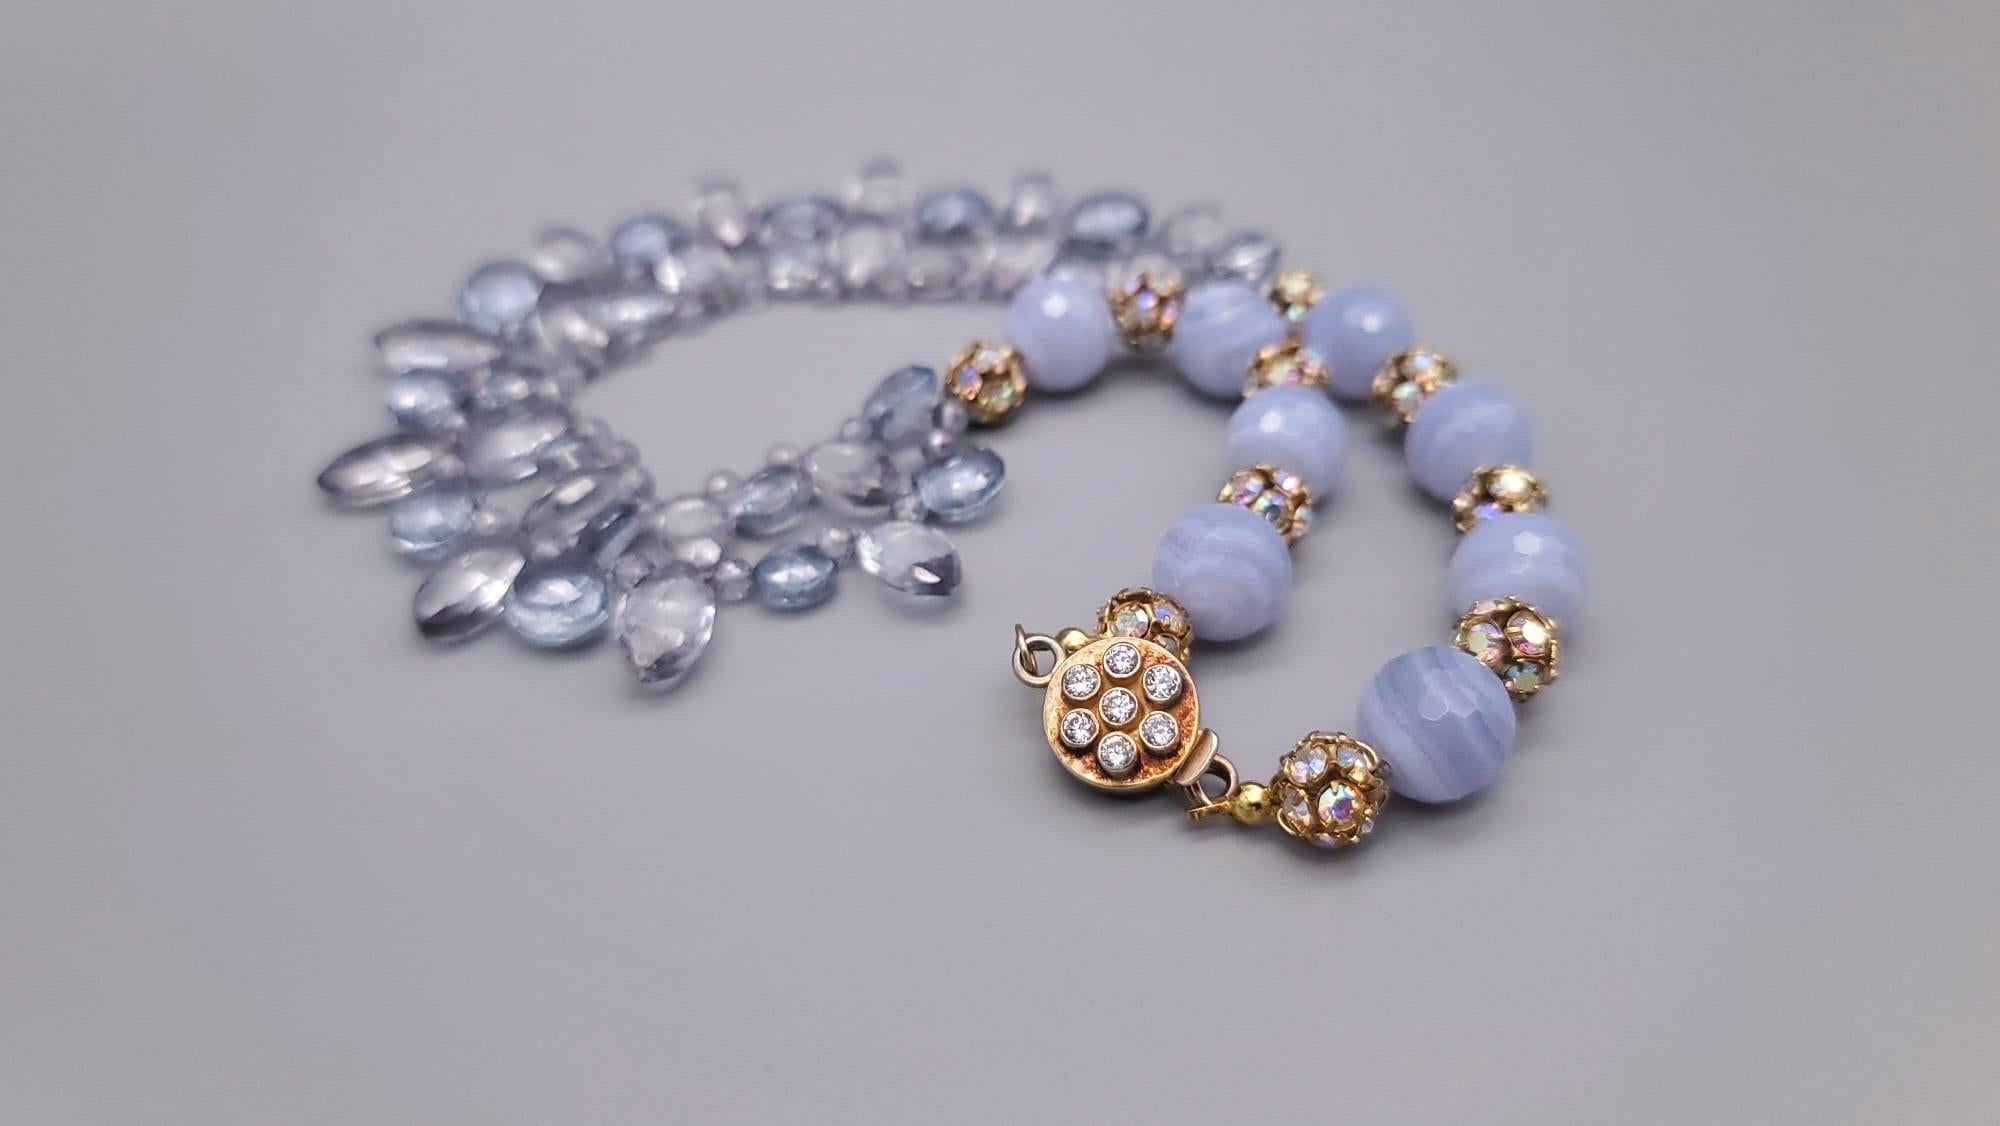 A.Jeschel Blue Quartz and Blue lace Agate Necklace. For Sale 6